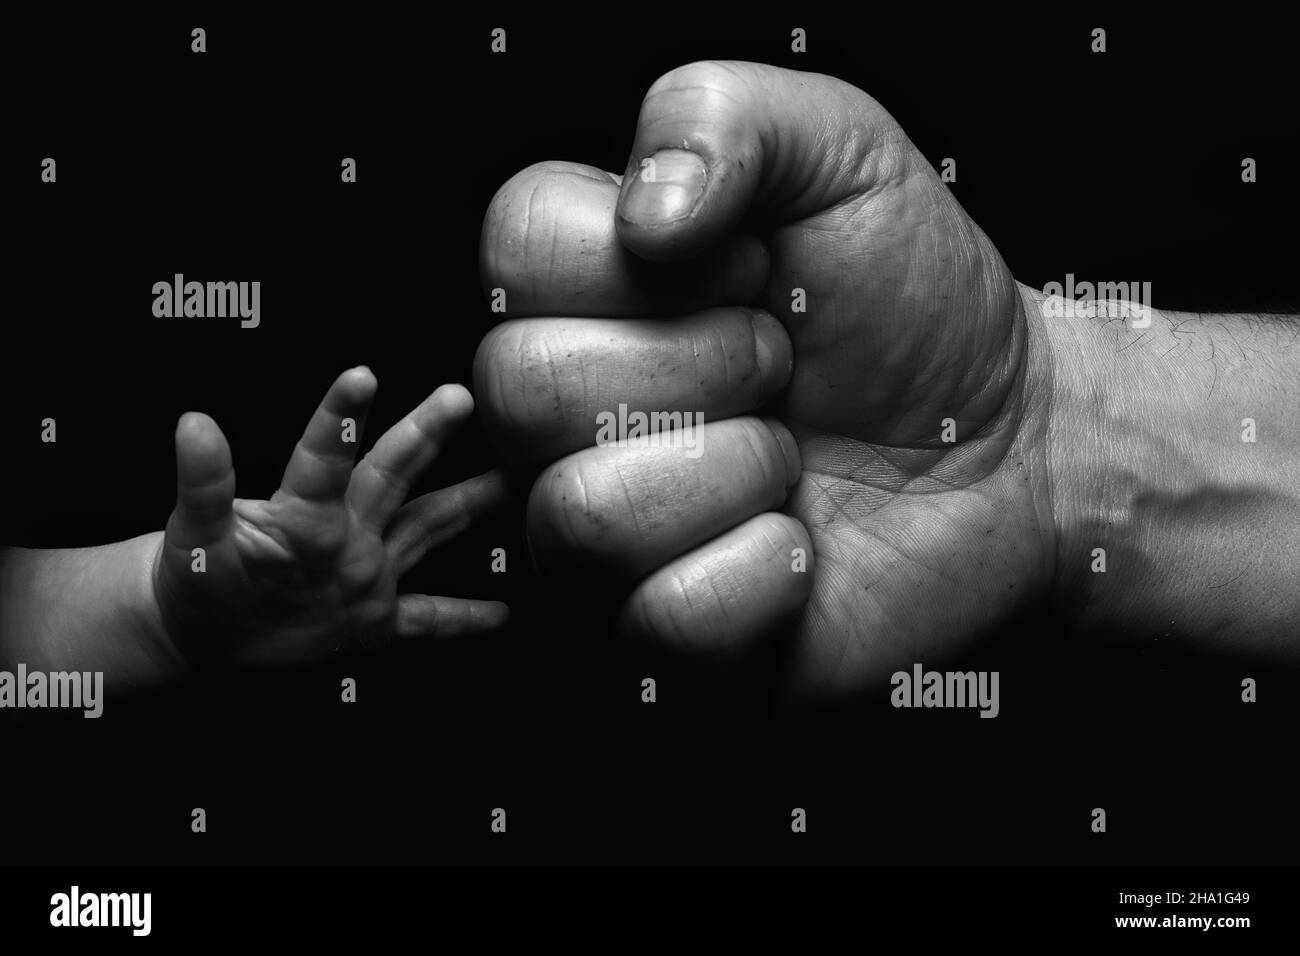 Primo piano in scala di grigi di un uomo cresciuto pugno-bumping mano con una mano di un bambino Foto Stock